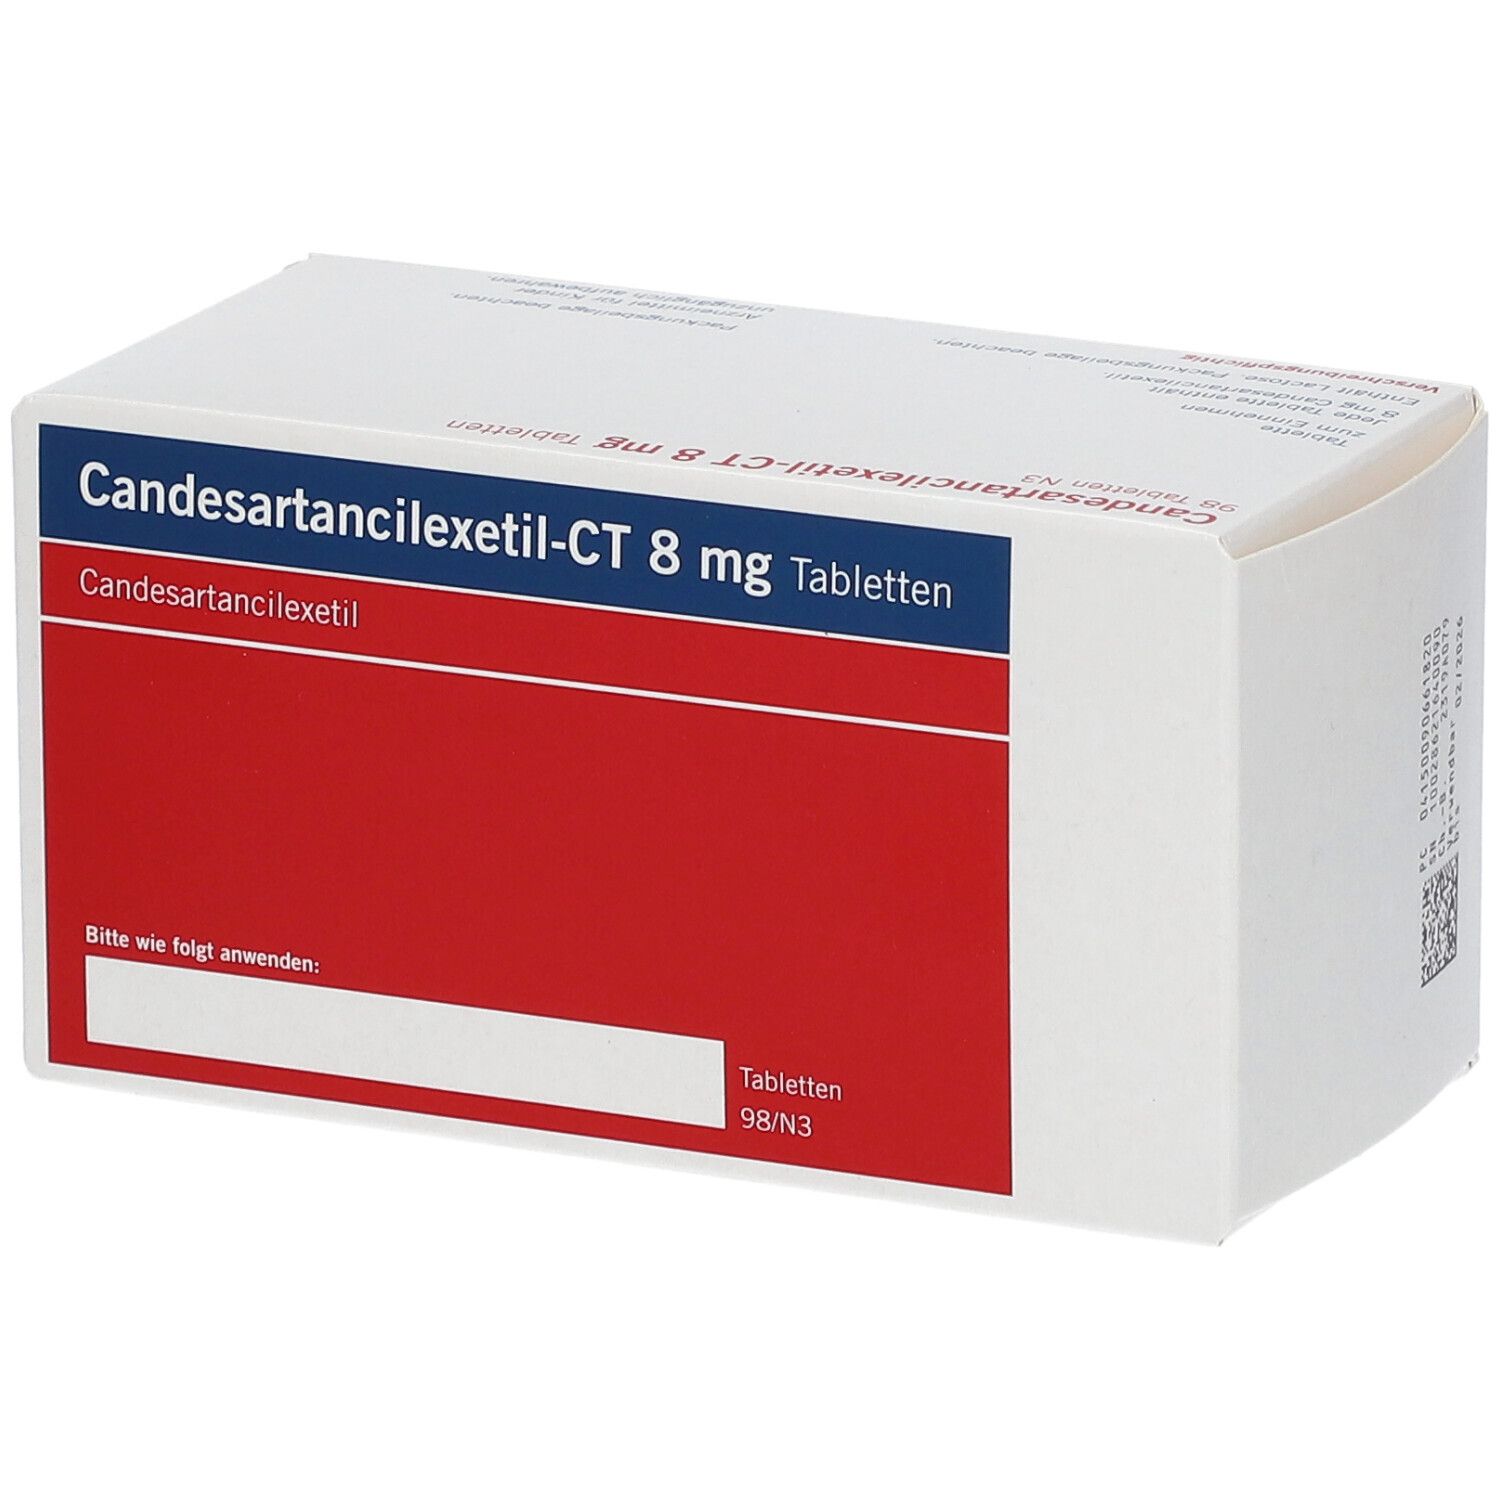 Candesartancilex - Ct 8Mg